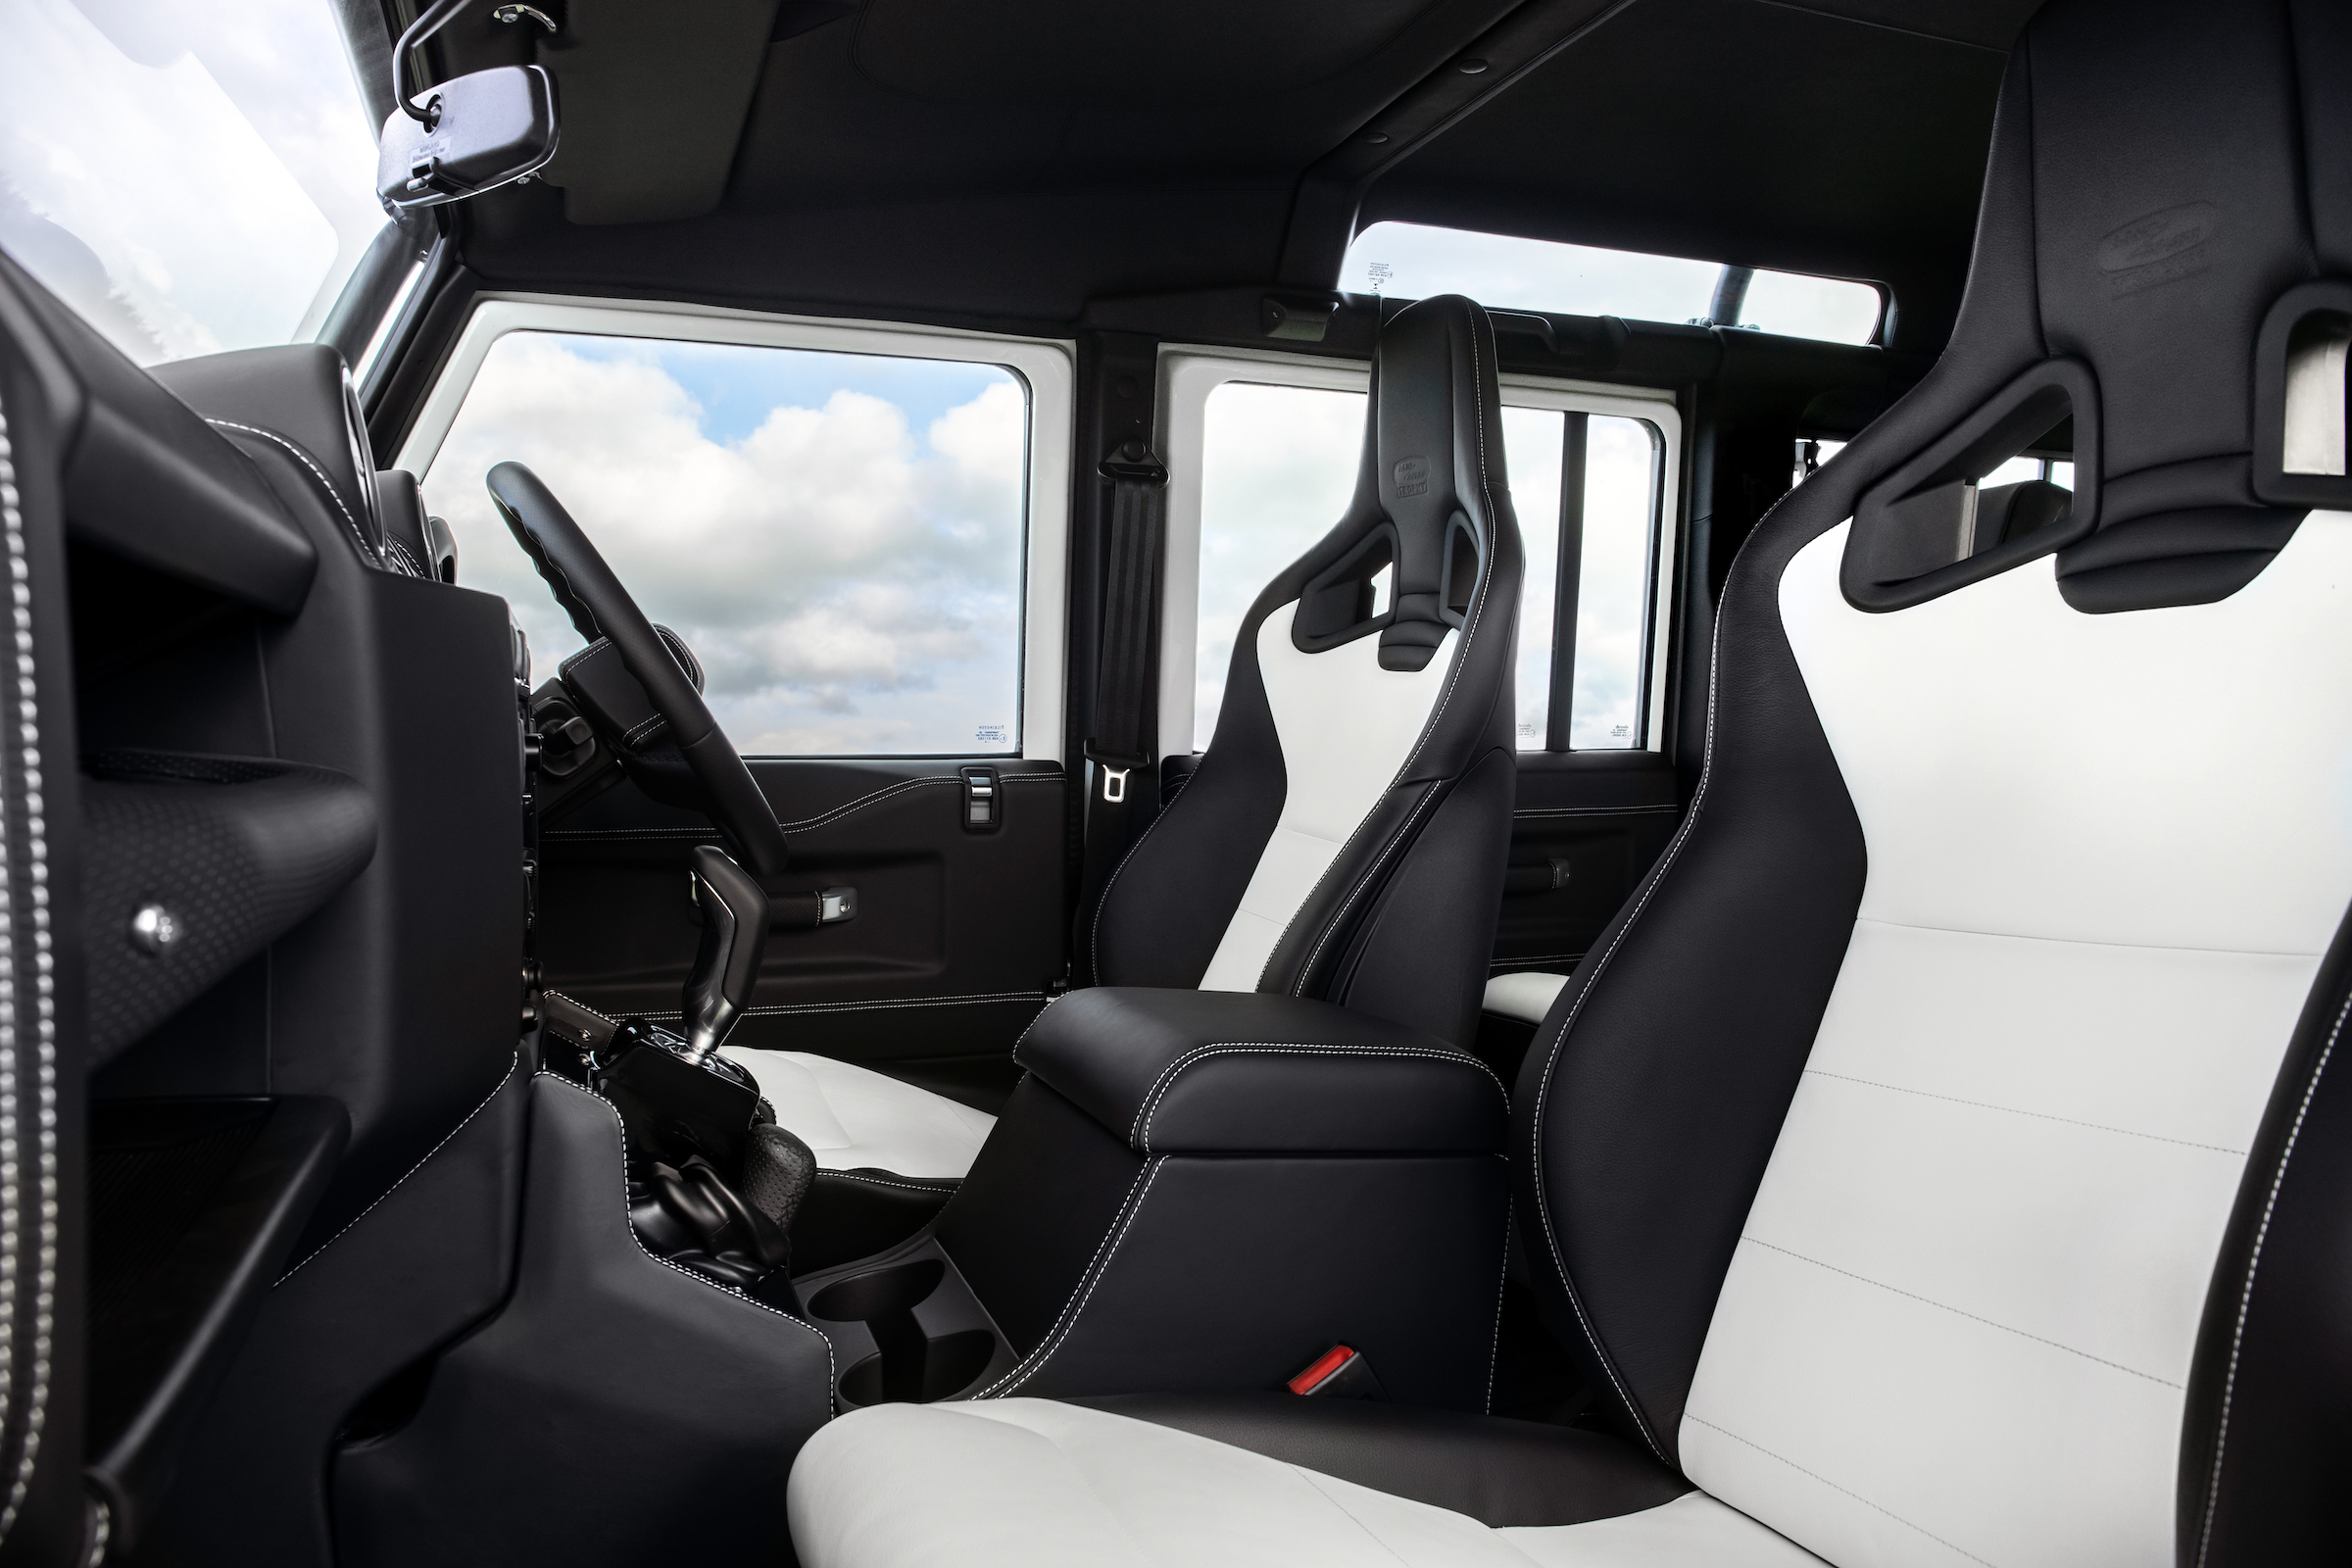 Land Rover Defender V8 Trophy II interior